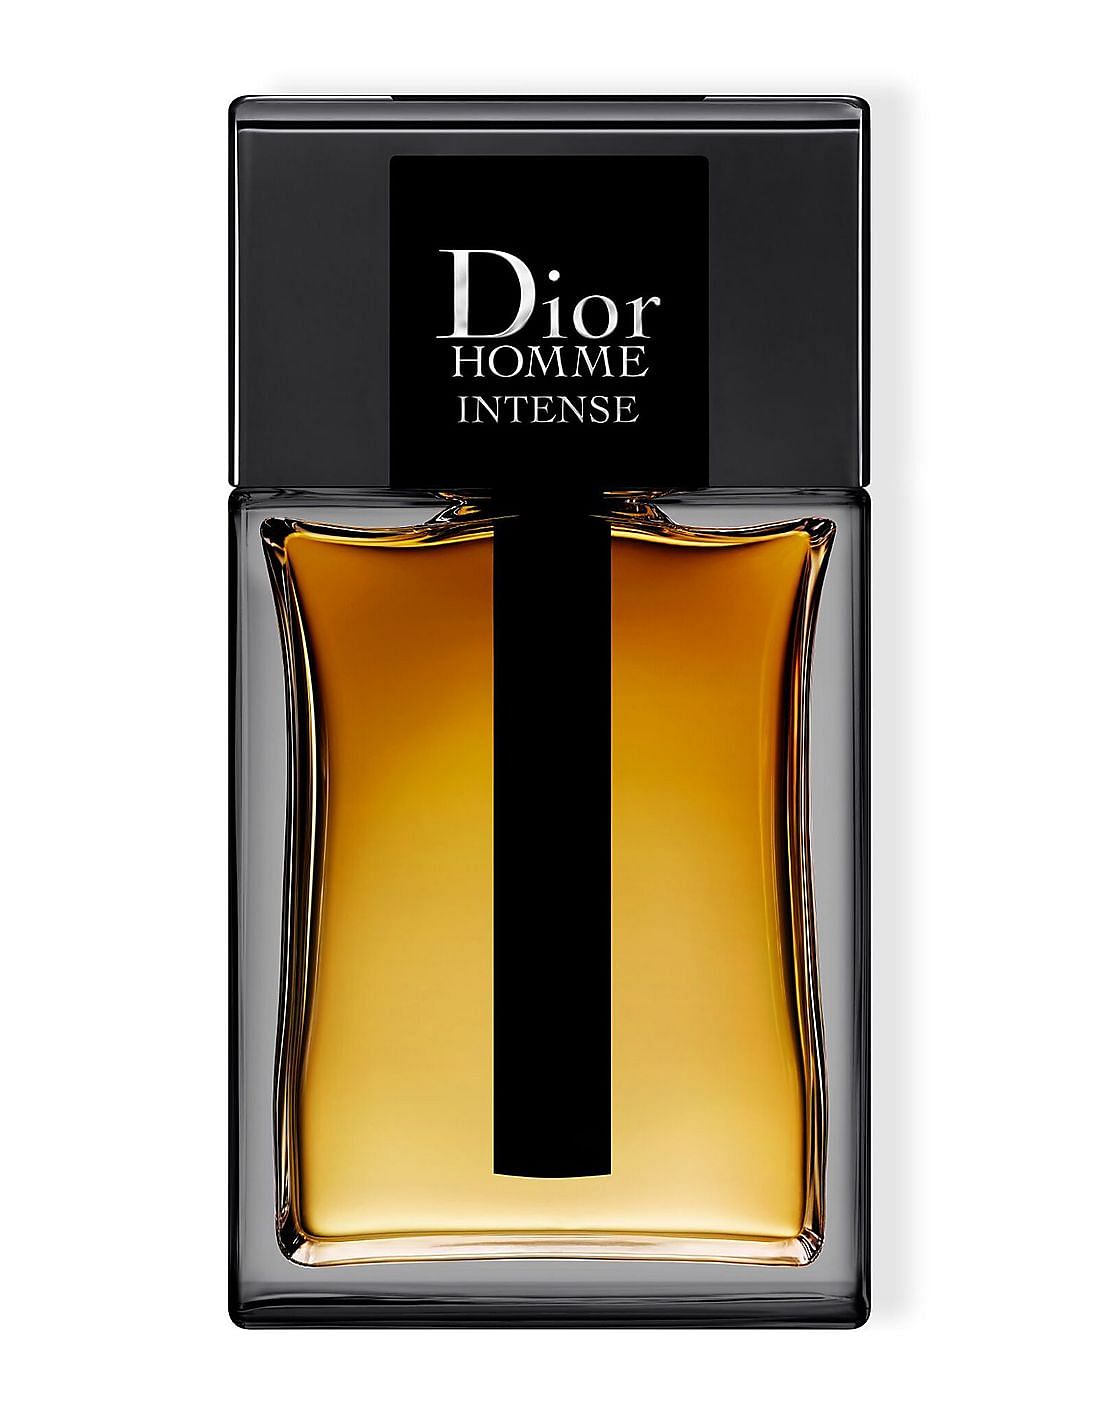 Nước hoa nam Dior Sauvage Parfum 100ml  Vua Hàng Mỹ